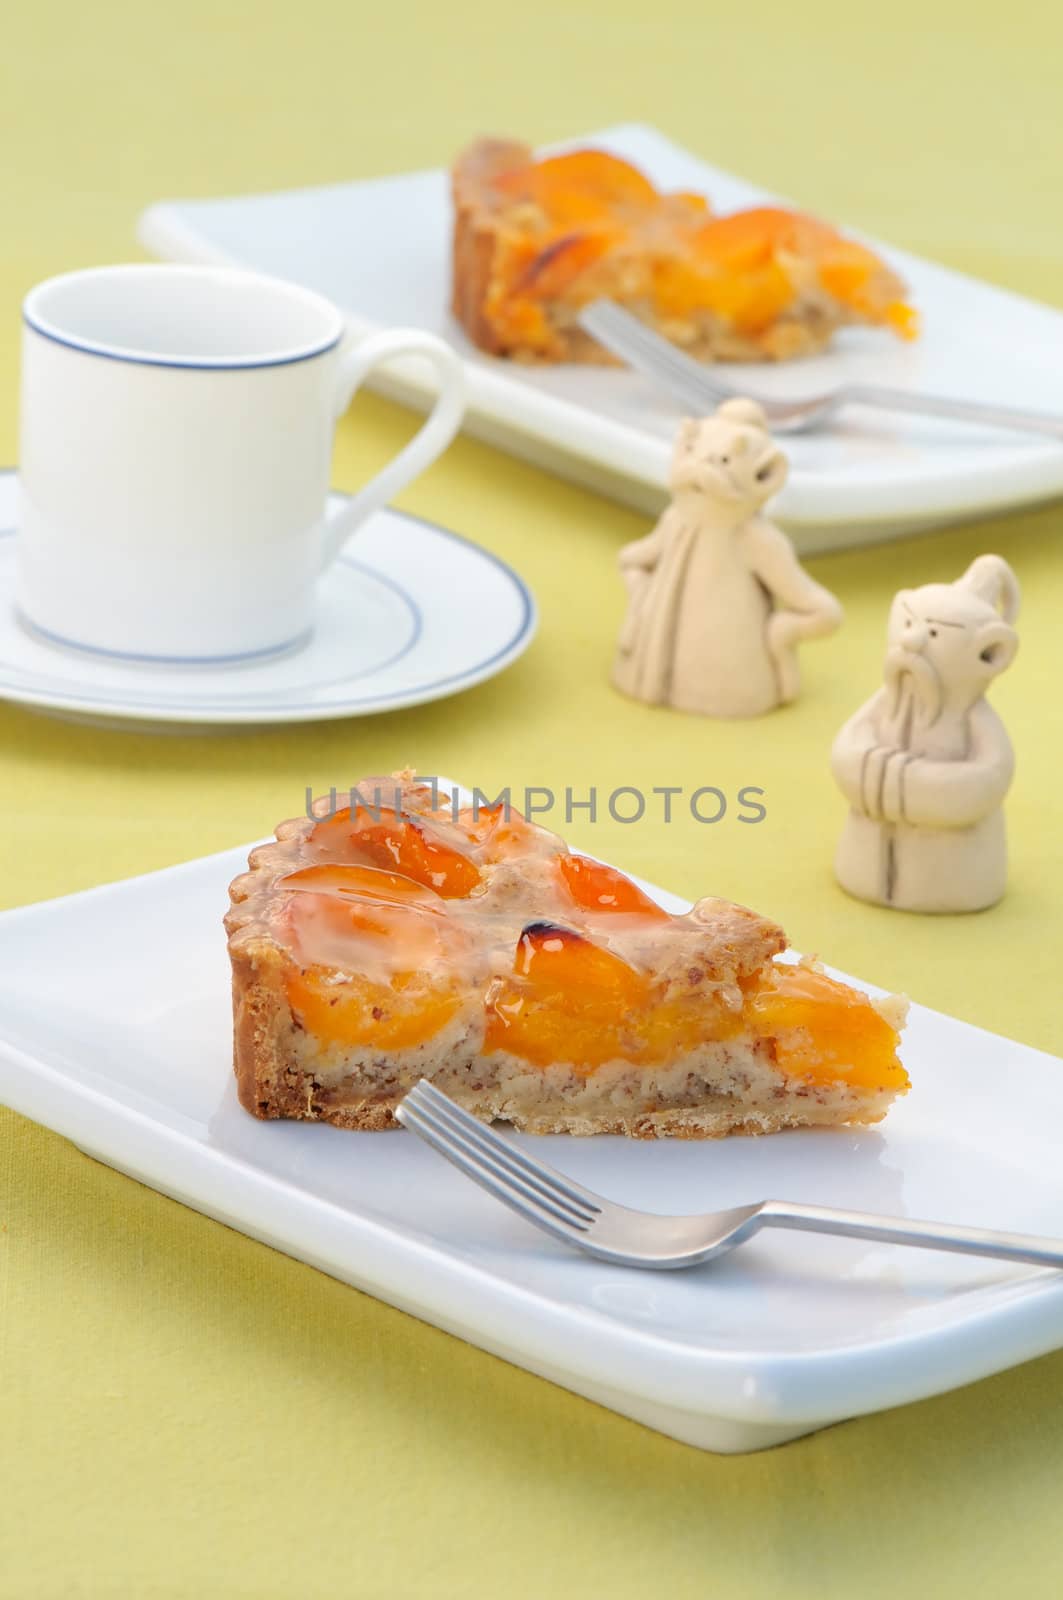 Apricot tart by Hbak